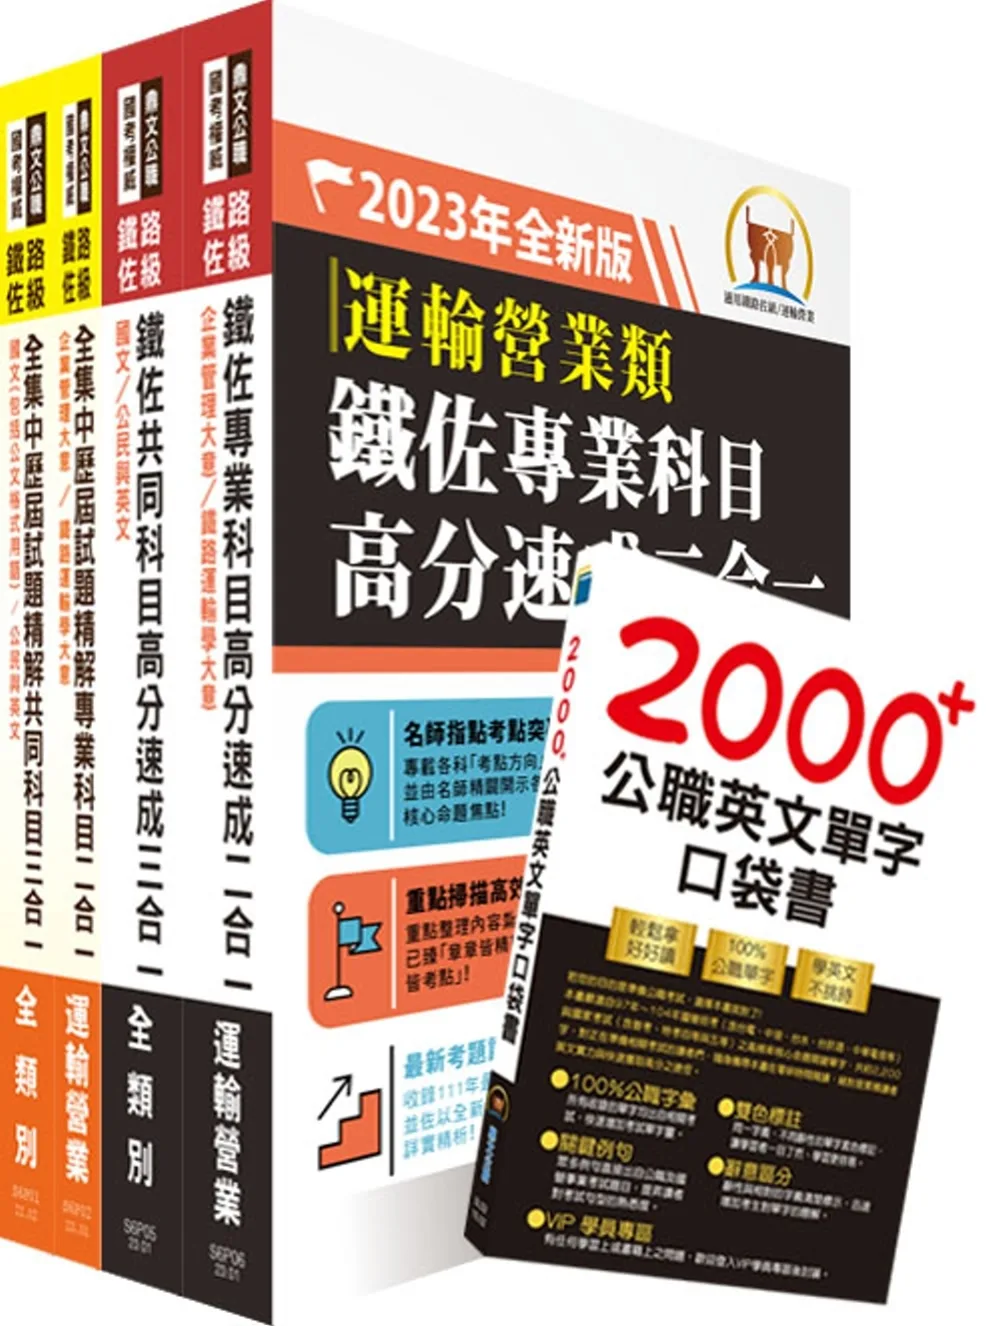 2023鐵路佐級•全集中歷屆試題精解【運輸營業】題庫套書